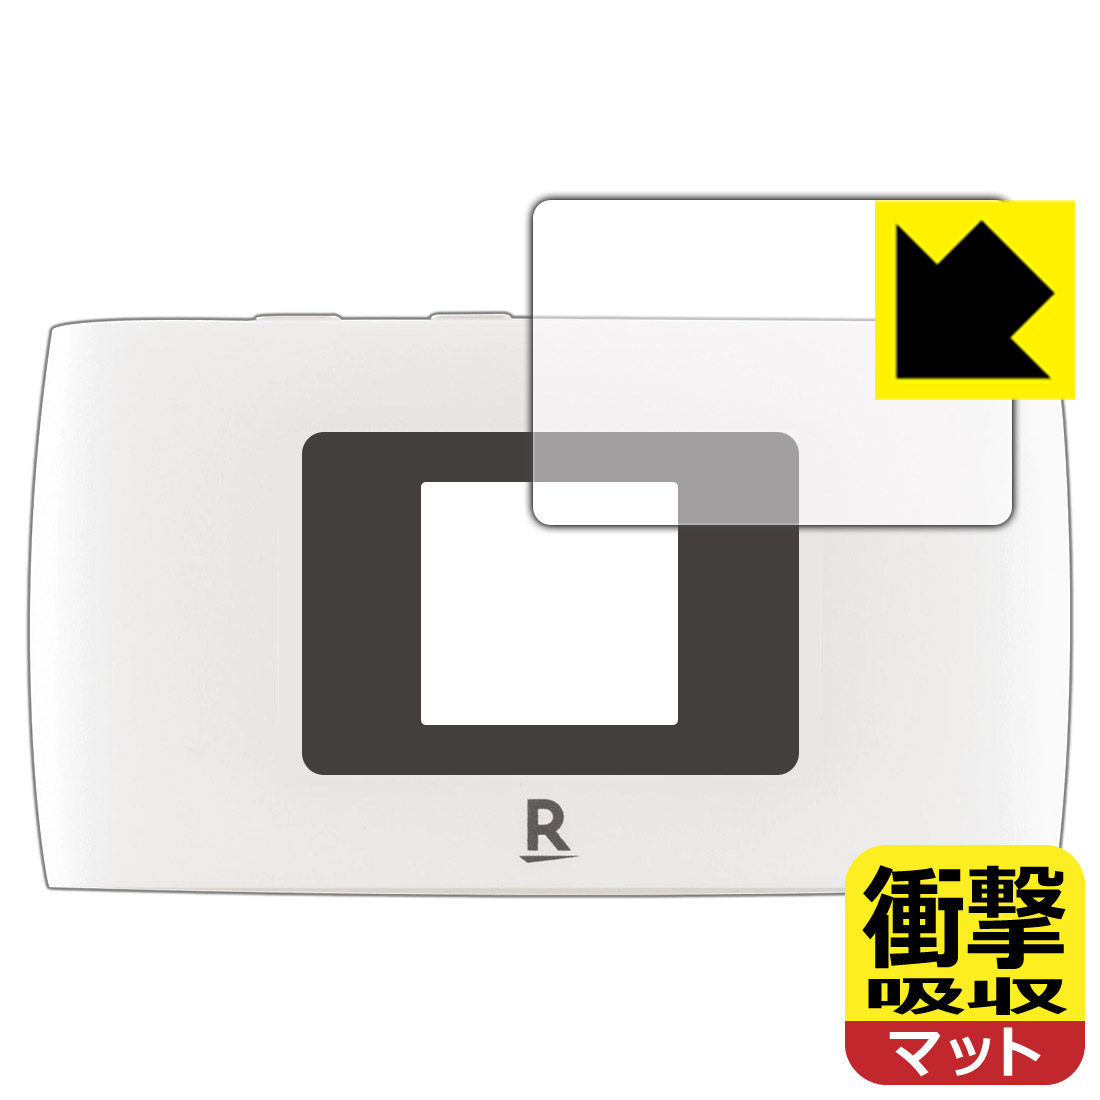 ●対応機種 : 楽天モバイル Rakuten WiFi Pocket 2B / Rakuten WiFi Pocket 2C専用の保護フィルムです。モバイルルーター本体ではありません。●製品内容 : 液晶用1枚●特殊素材の衝撃吸収層が外部からの衝撃を吸収し、機器へのダメージをやわらげます。●安心の国産素材を使用。日本国内の自社工場で製造し出荷しています。【ポスト投函送料無料】商品は【ポスト投函発送 (追跡可能メール便)】で発送します。お急ぎ、配達日時を指定されたい方は以下のクーポンを同時購入ください。【お急ぎ便クーポン】　プラス110円(税込)で速達扱いでの発送。お届けはポストへの投函となります。【配達日時指定クーポン】　プラス550円(税込)で配達日時を指定し、宅配便で発送させていただきます。【お急ぎ便クーポン】はこちらをクリック【配達日時指定クーポン】はこちらをクリック 　 特殊素材の衝撃吸収層がたわむことで衝撃を吸収し、液晶画面や機器へのダメージをやわらげます。ガラスフィルムは割れることがあるため、破損部分でケガをすることがありますが、このフィルムはPET素材ですので、絶対に割れず、安全にお使いいただけます。もちろん割れたカケラが落ちることもありませんので、異物混入などのトラブルも未然に防ぎます。 表面に微細な凹凸を作ることにより、外光を乱反射させギラツキを抑える「アンチグレア加工」がされております。 屋外での太陽光の映り込み、屋内でも蛍光灯などの映り込みが気になるシーンが多い方におすすめです。 また、指紋がついた場合でも目立ちにくいという特長があります。 反射防止のアンチグレア加工で指紋が目立ちにくい上、表面はフッ素コーティングがされており、皮脂や汚れがつきにくく、また、落ちやすくなっています。指滑りはさらさらな使用感です。 油性マジックのインクもはじきますので簡単に拭き取れます。 抗菌加工によりフィルム表面の菌の繁殖を抑えることができます。 清潔な画面を保ちたい方におすすめです。 ※抗菌率99.9％ / JIS Z2801 抗菌性試験方法による評価 接着面は気泡の入りにくい特殊な自己吸着タイプです。素材に柔軟性があり、貼り付け作業も簡単にできます。また、はがすときにガラス製フィルムのように割れてしまうことはありません。 貼り直しが何度でもできるので、正しい位置へ貼り付けられるまでやり直すことができます。 最高級グレードの国産素材を日本国内の弊社工場で加工している完全な Made in Japan です。安心の品質をお届けします。 使用上の注意 ●本製品は機器の画面をキズなどから保護するフィルムです。他の目的にはご使用にならないでください。 ●本製品は液晶保護および機器本体を完全に保護することを保証するものではありません。機器の破損、損傷、故障、その他損害につきましては一切の責任を負いかねます。 ●製品の性質上、画面操作の反応が変化したり、表示等が変化して見える場合がございます。 ●貼り付け作業時の失敗(位置ズレ、汚れ、ゆがみ、折れ、気泡など)および取り外し作業時の破損、損傷などについては、一切の責任を負いかねます。 ●水に濡れた状態でのご使用は吸着力の低下などにより、保護フィルムがはがれてしまう場合がございます。防水対応の機器でご使用の場合はご注意ください。 ●アルコール類やその他薬剤を本製品に付着させないでください。表面のコーティングや吸着面が変質するおそれがあります。 ●品質向上のため、仕様などを予告なく変更する場合がございますので、予めご了承ください。